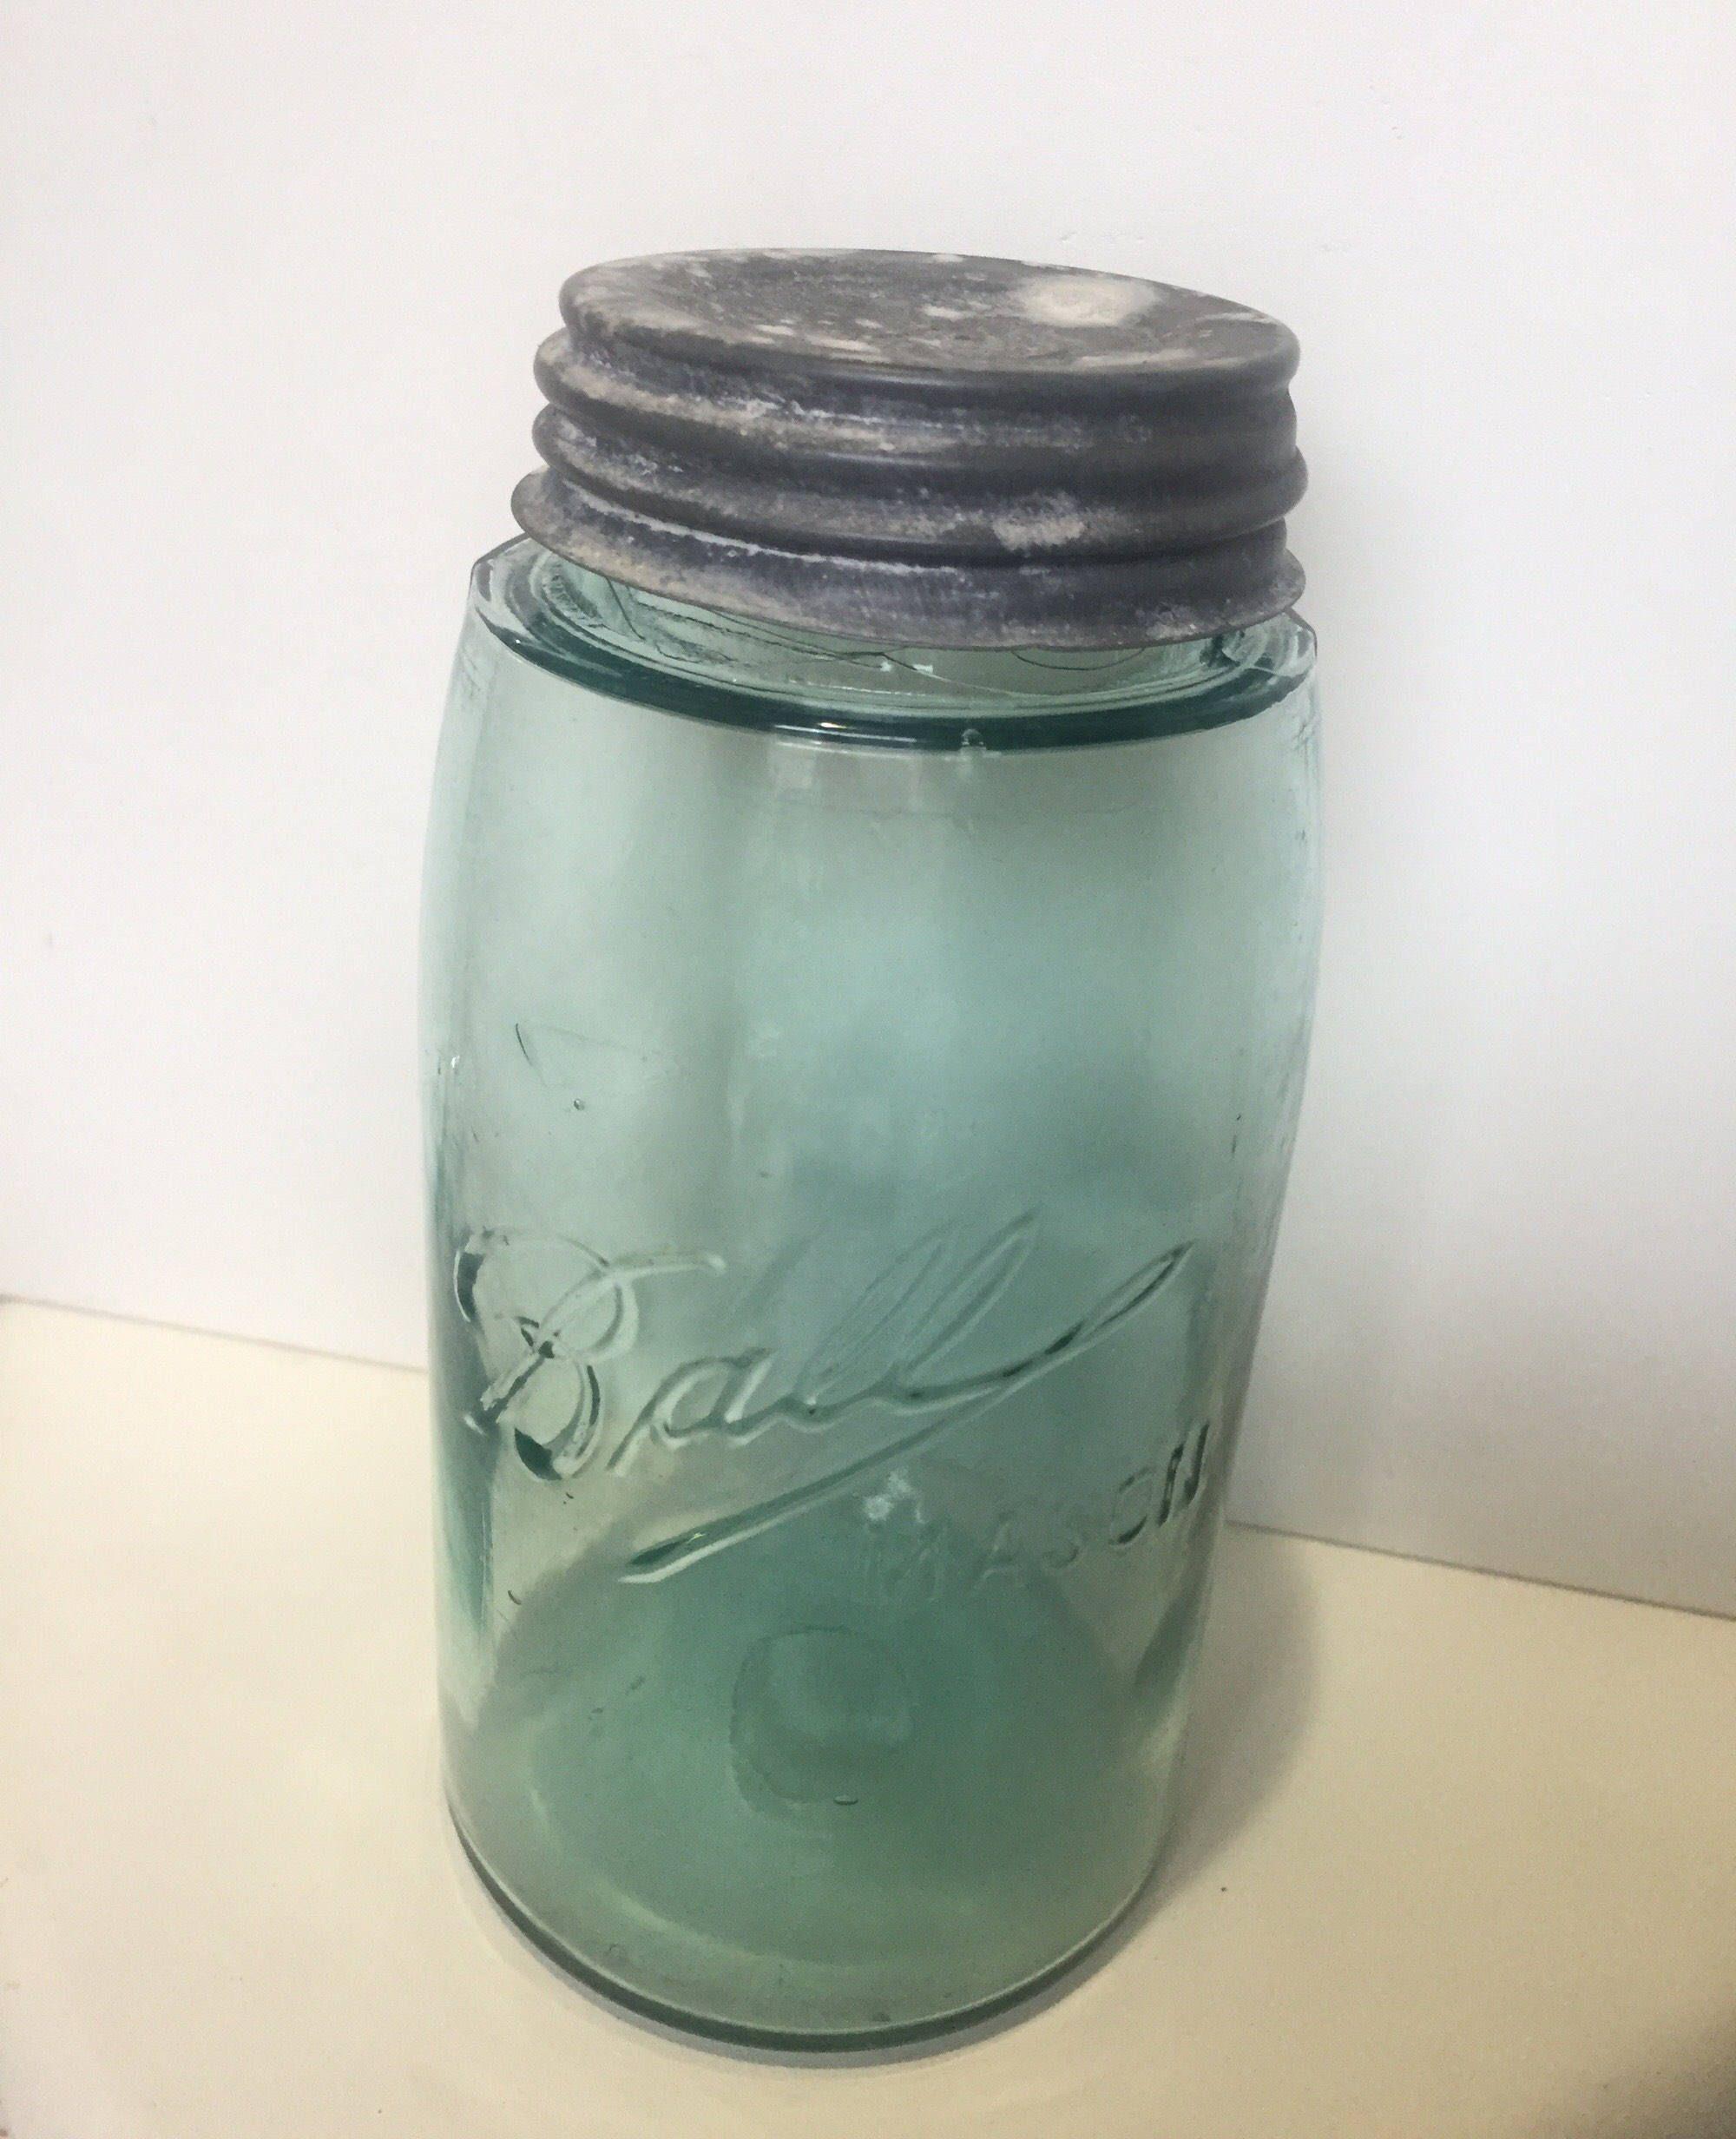 Triple L Logo - Antique blue ball jar rare 1 quart 1910-1913 triple L logo with zinc ...